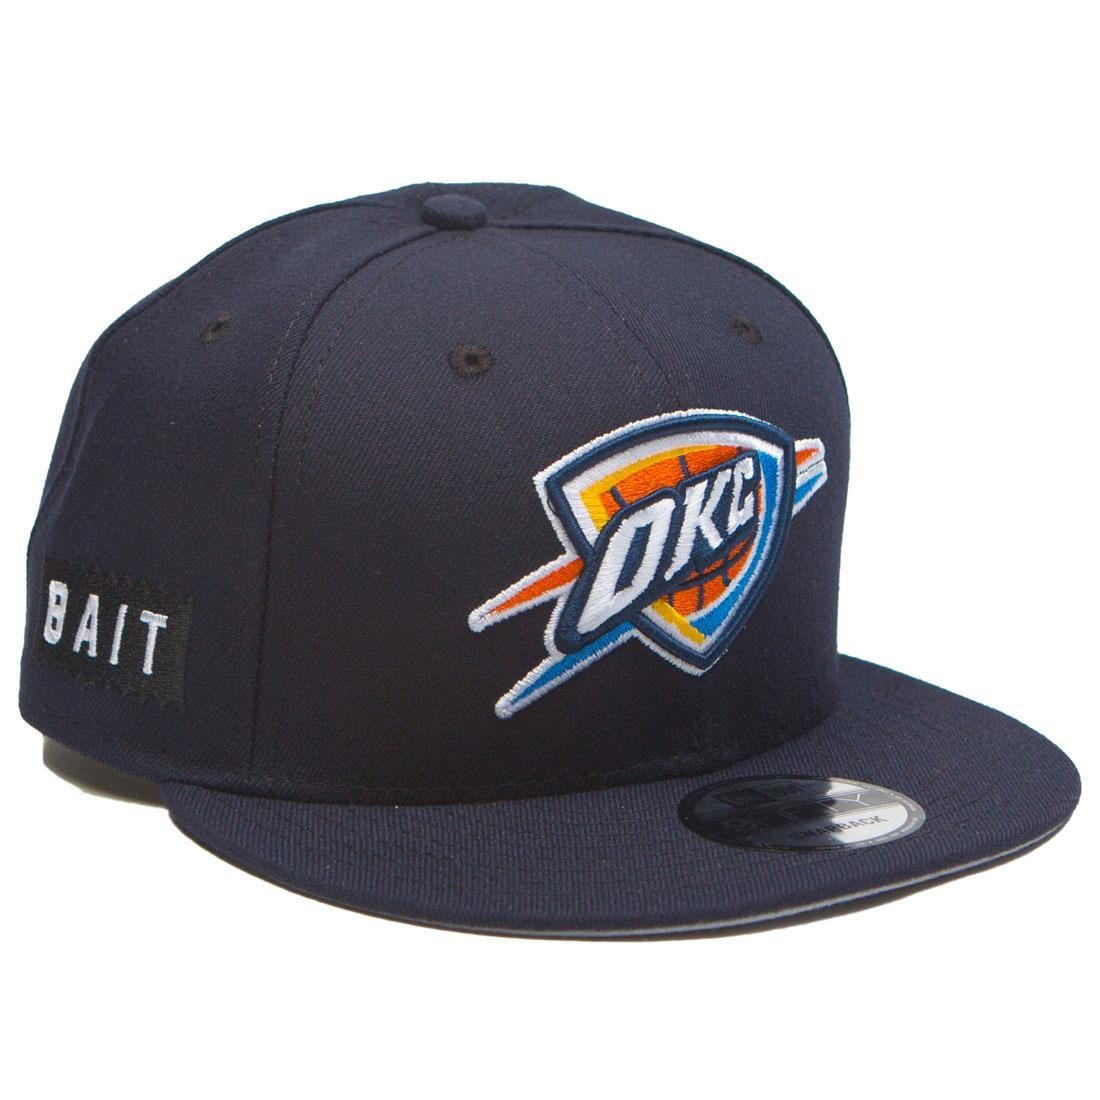 Oklahoma City Thunder BACK HALF FADE SNAPBACK Hat by New Era